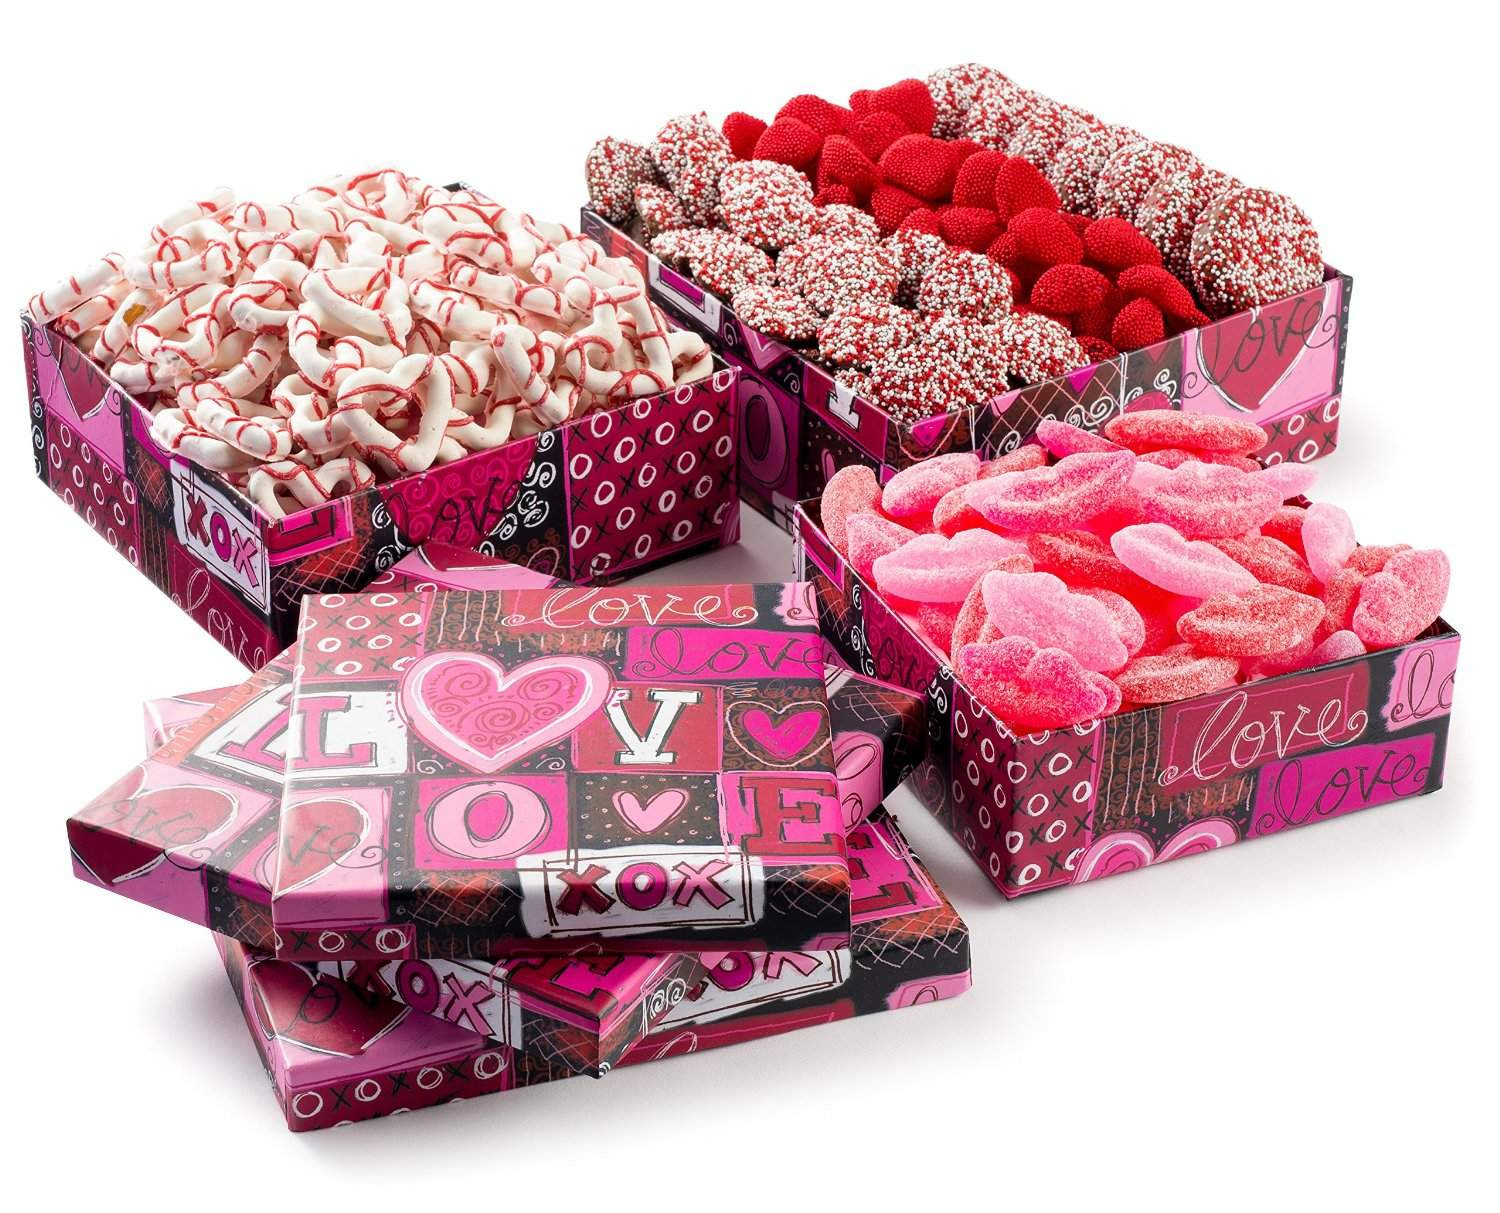 Valentine Sweet Gift Ideas
 Top 5 Best Valentine’s Day Candy Gift Ideas